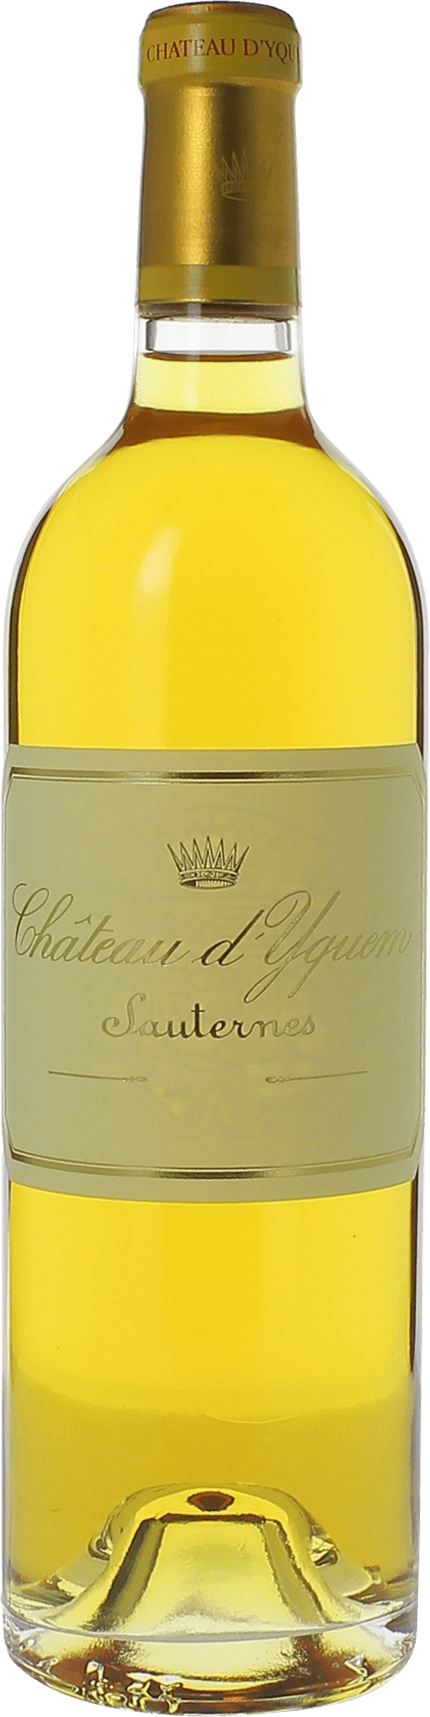 Yquem 1995 1er Grand cru class Sauternes, Bordeaux blanc